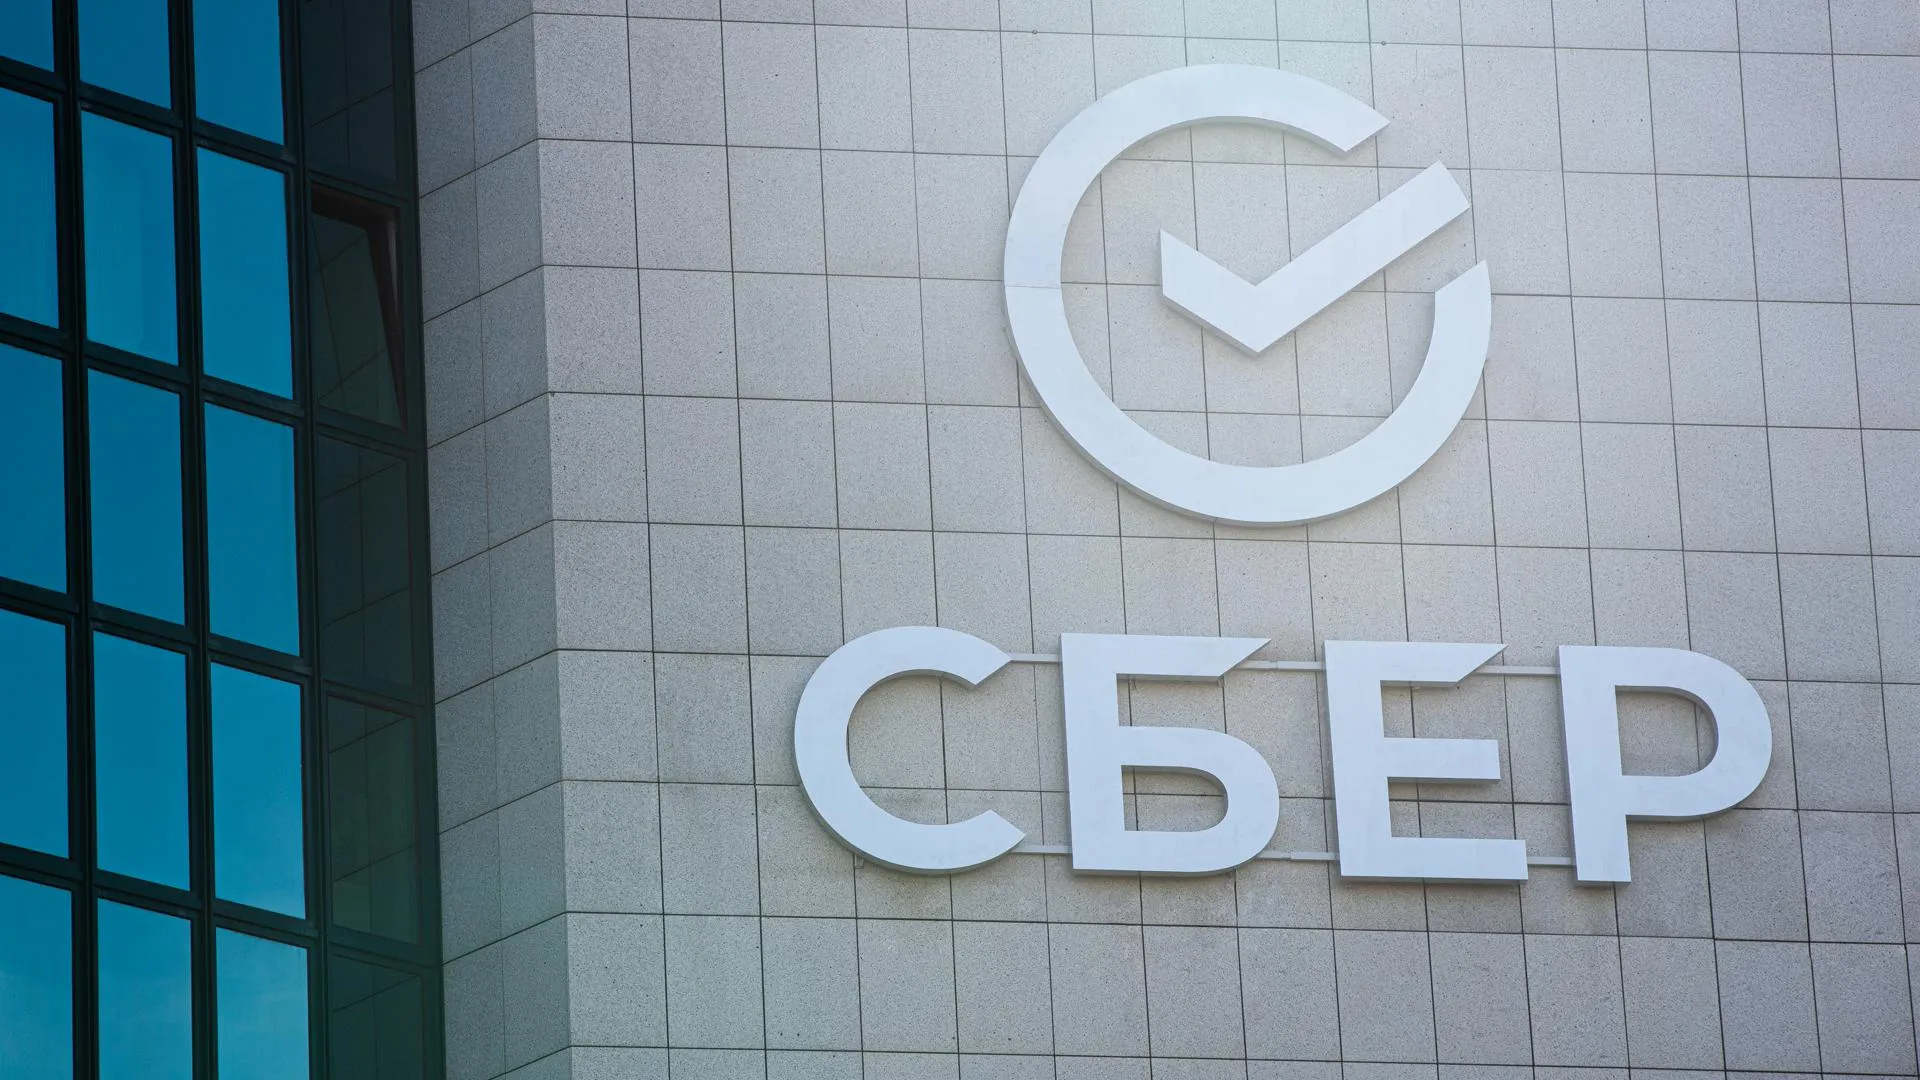 Сбер профинансирует ГК ФСК для строительства жилого комплекса в Новой Москве